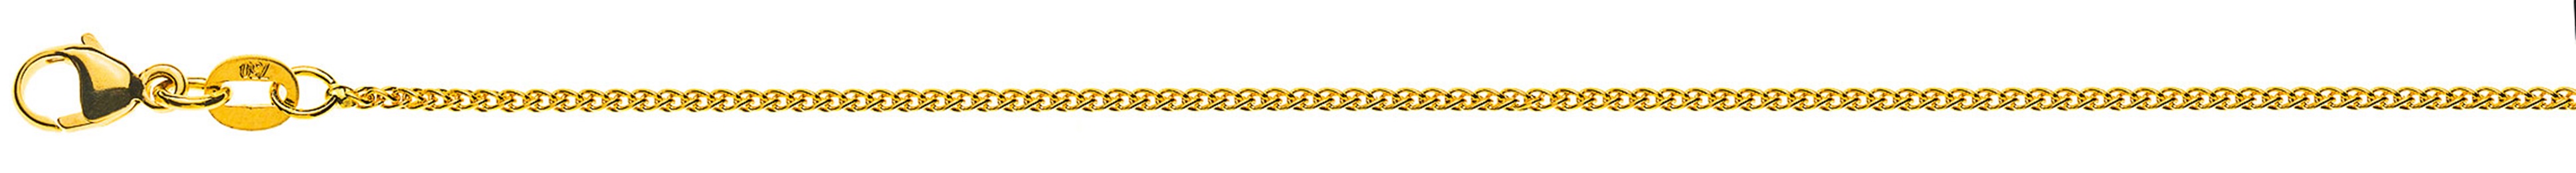 AURONOS Prestige Halskette Gelbgold 18K Zopfkette 45cm 1.2mm